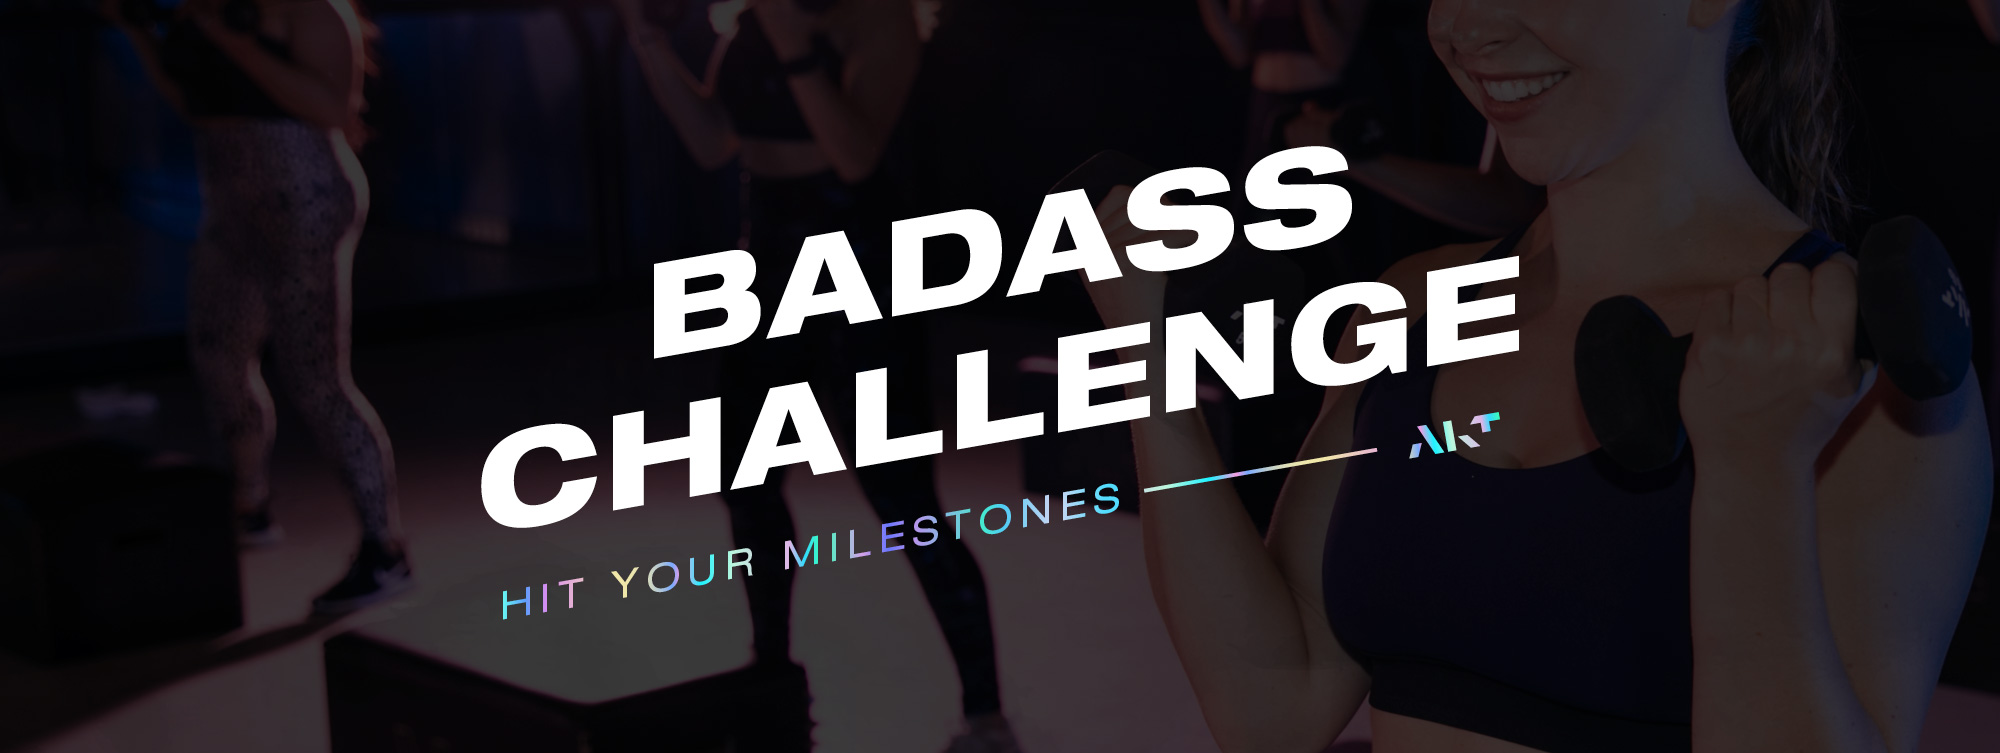 Badass Challenge